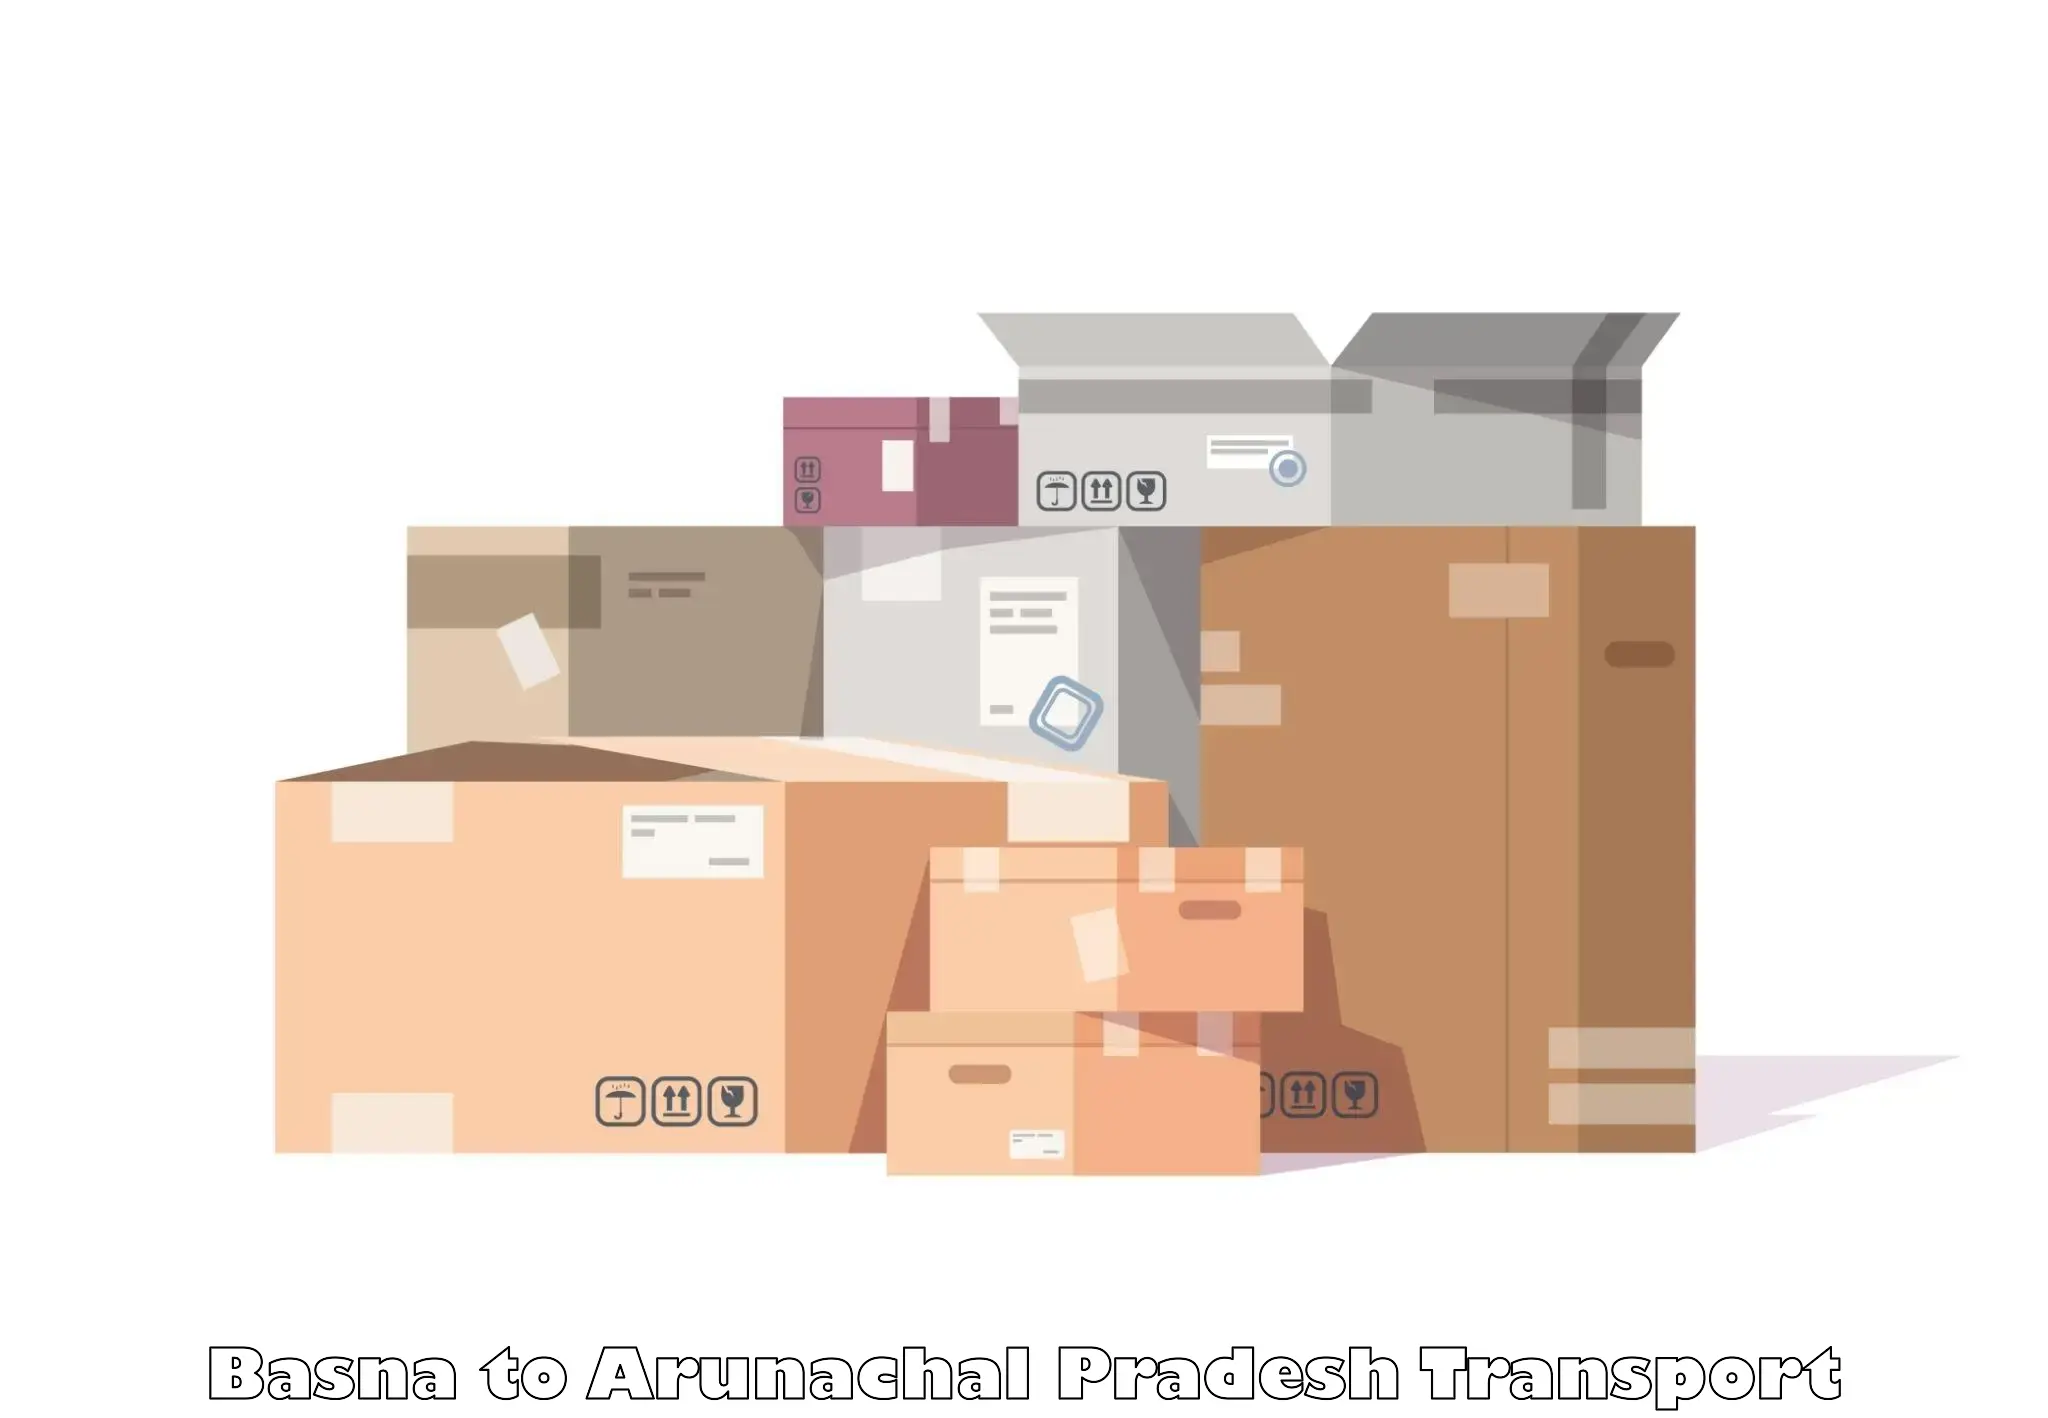 Cargo transport services Basna to Arunachal Pradesh